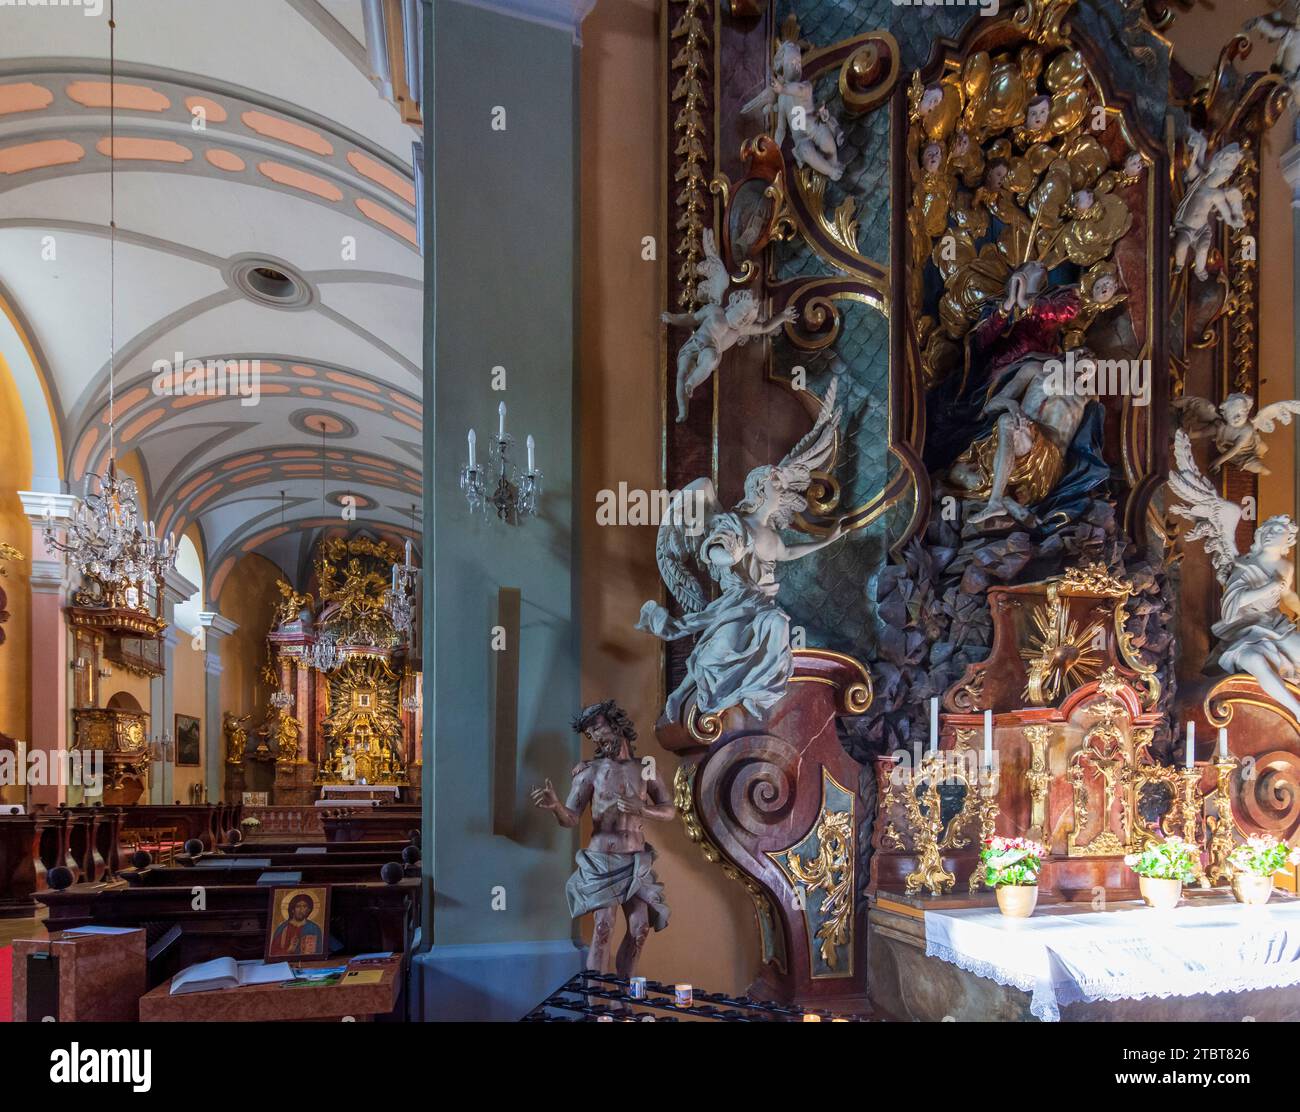 Gutenstein, pilgramage church Mariahilfberg, nave in Vienna Alps, Lower Austria, Austria Stock Photo